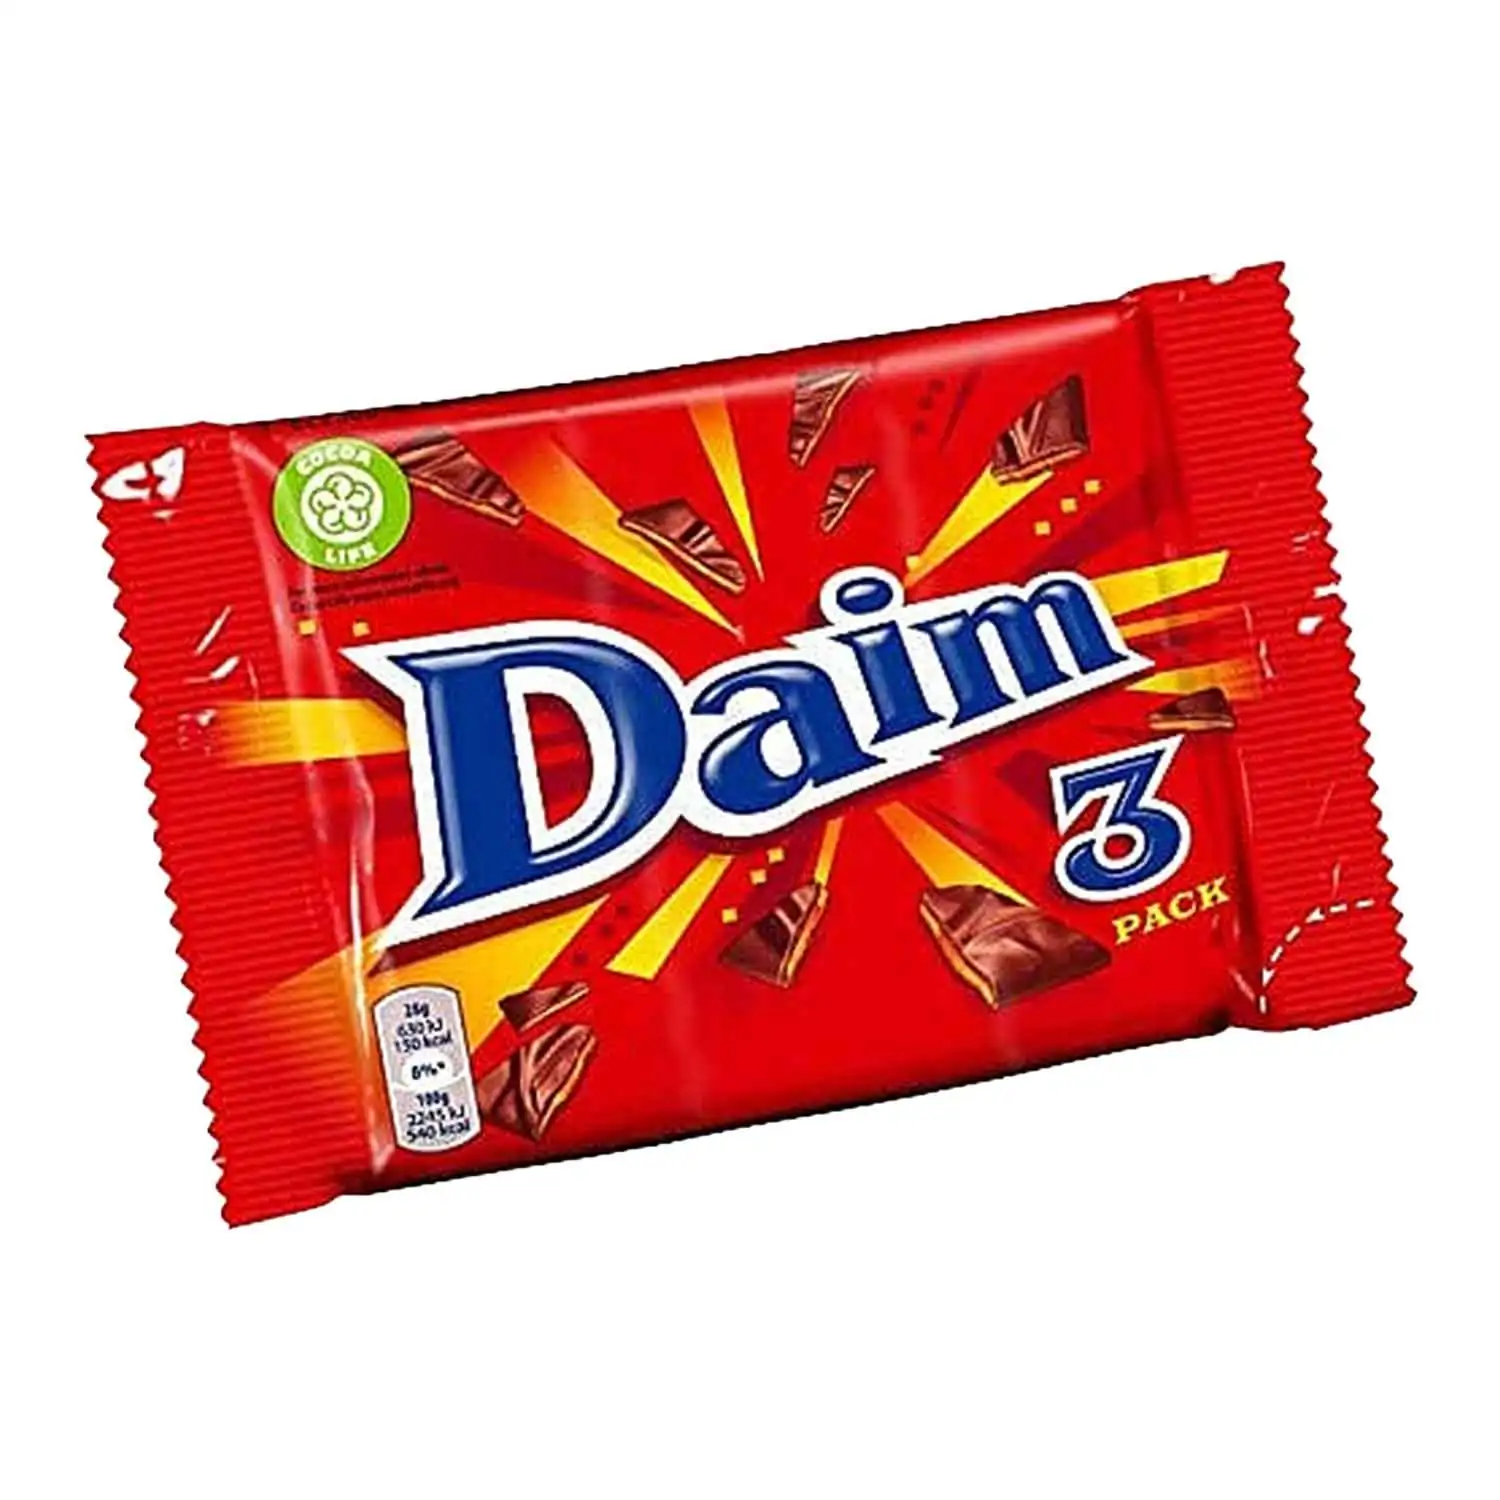 Daim 3x28g - Buy at Real Tobacco